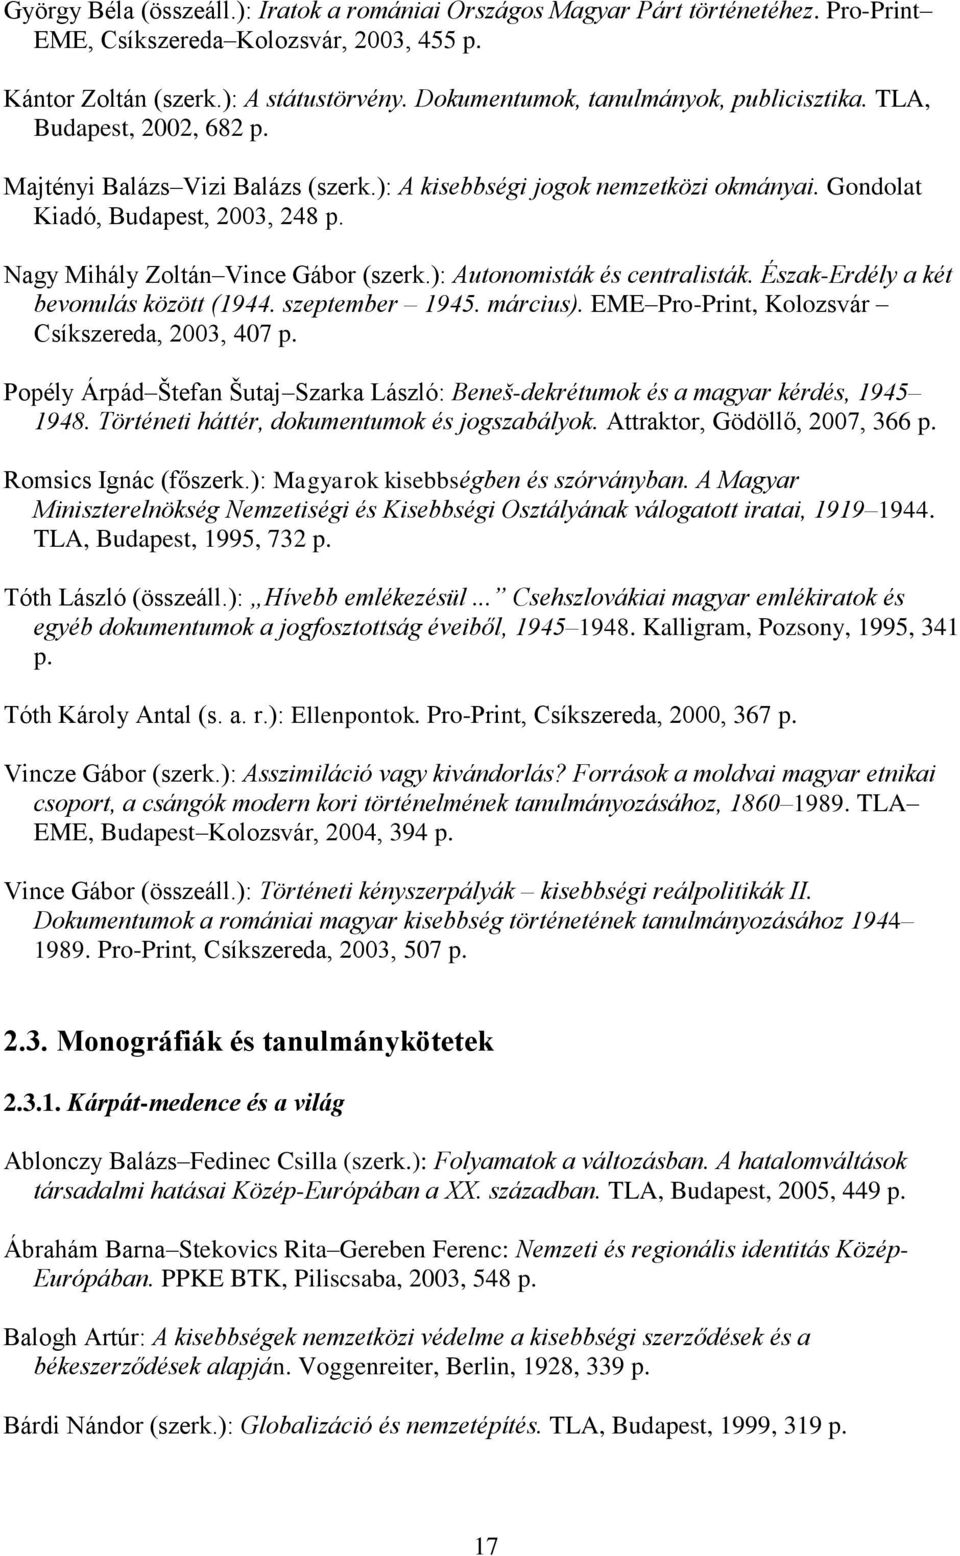 Nagy Mihály Zoltán Vince Gábor (szerk.): Autonomisták és centralisták. Észak-Erdély a két bevonulás között (1944. szeptember 1945. március). EME Pro-Print, Kolozsvár Csíkszereda, 2003, 407 p.